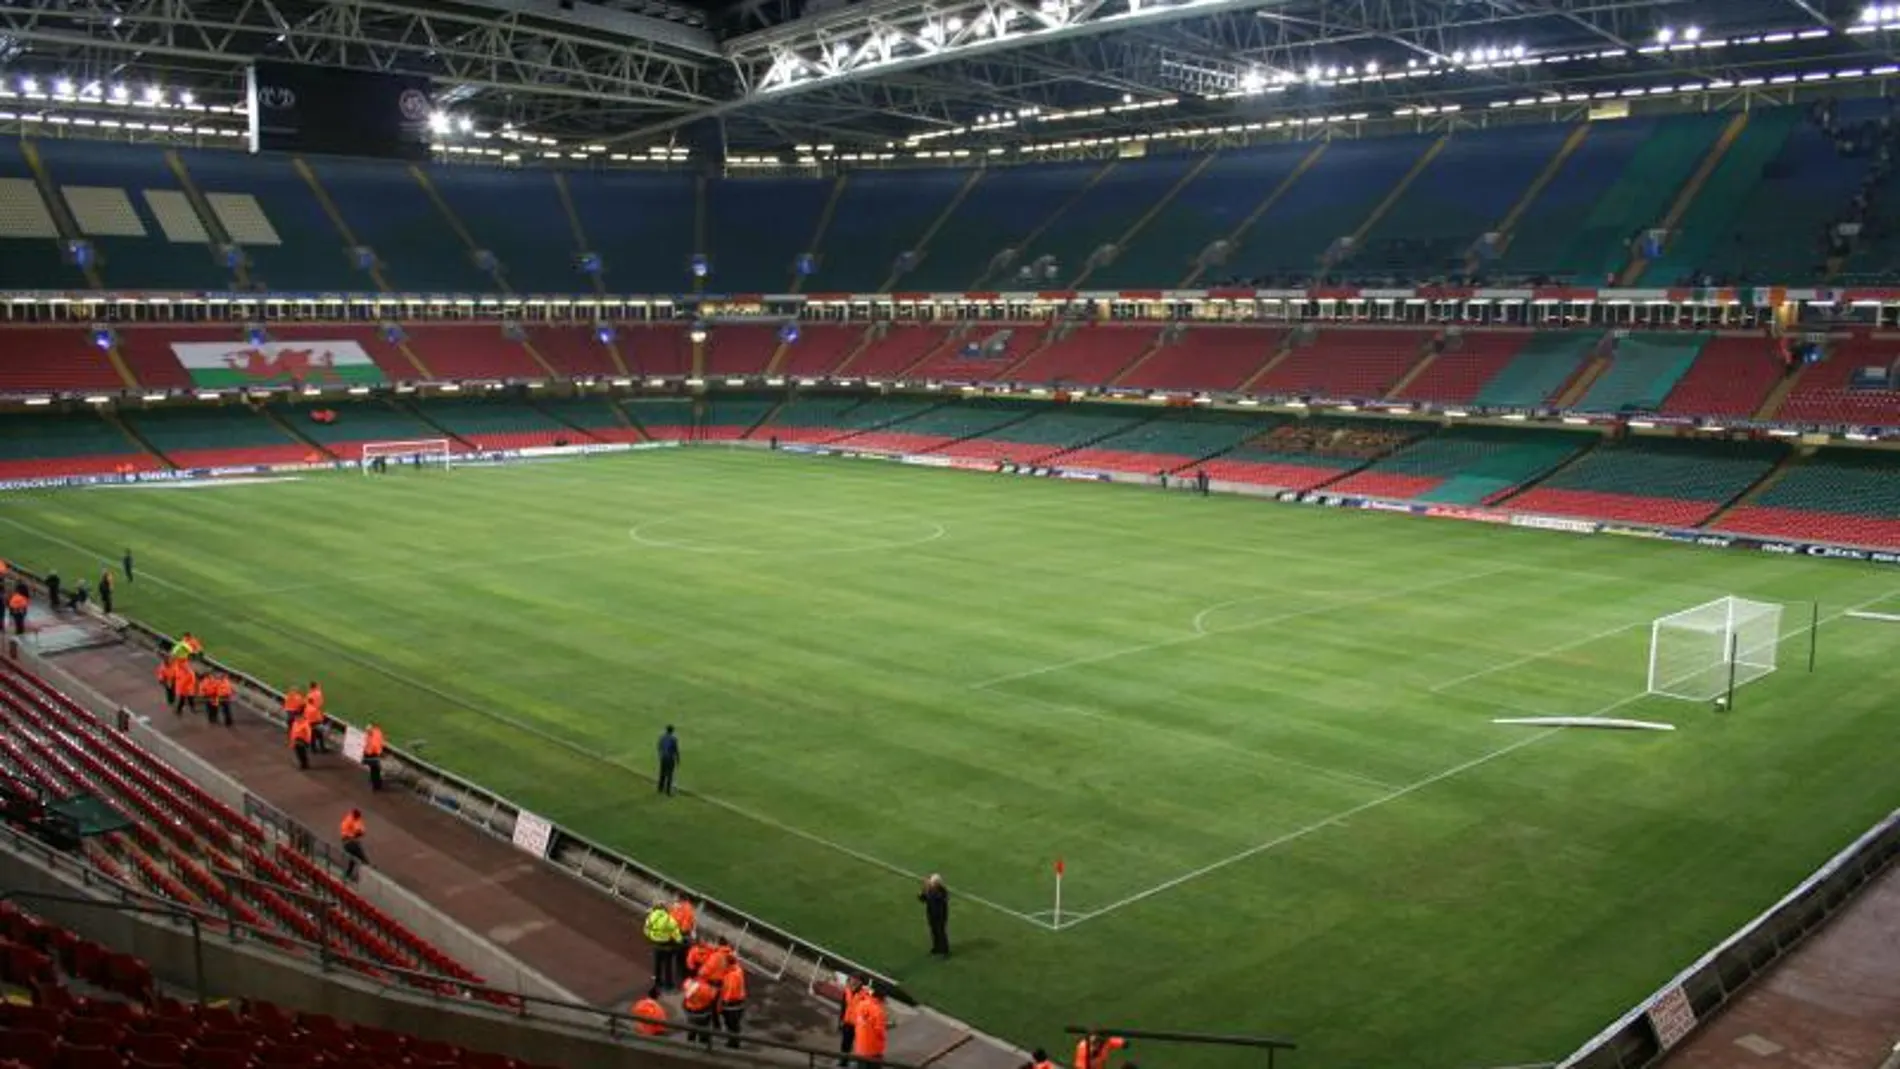 Vista general del Millenium Stadium, donde se disputa la final de Champions 16/17